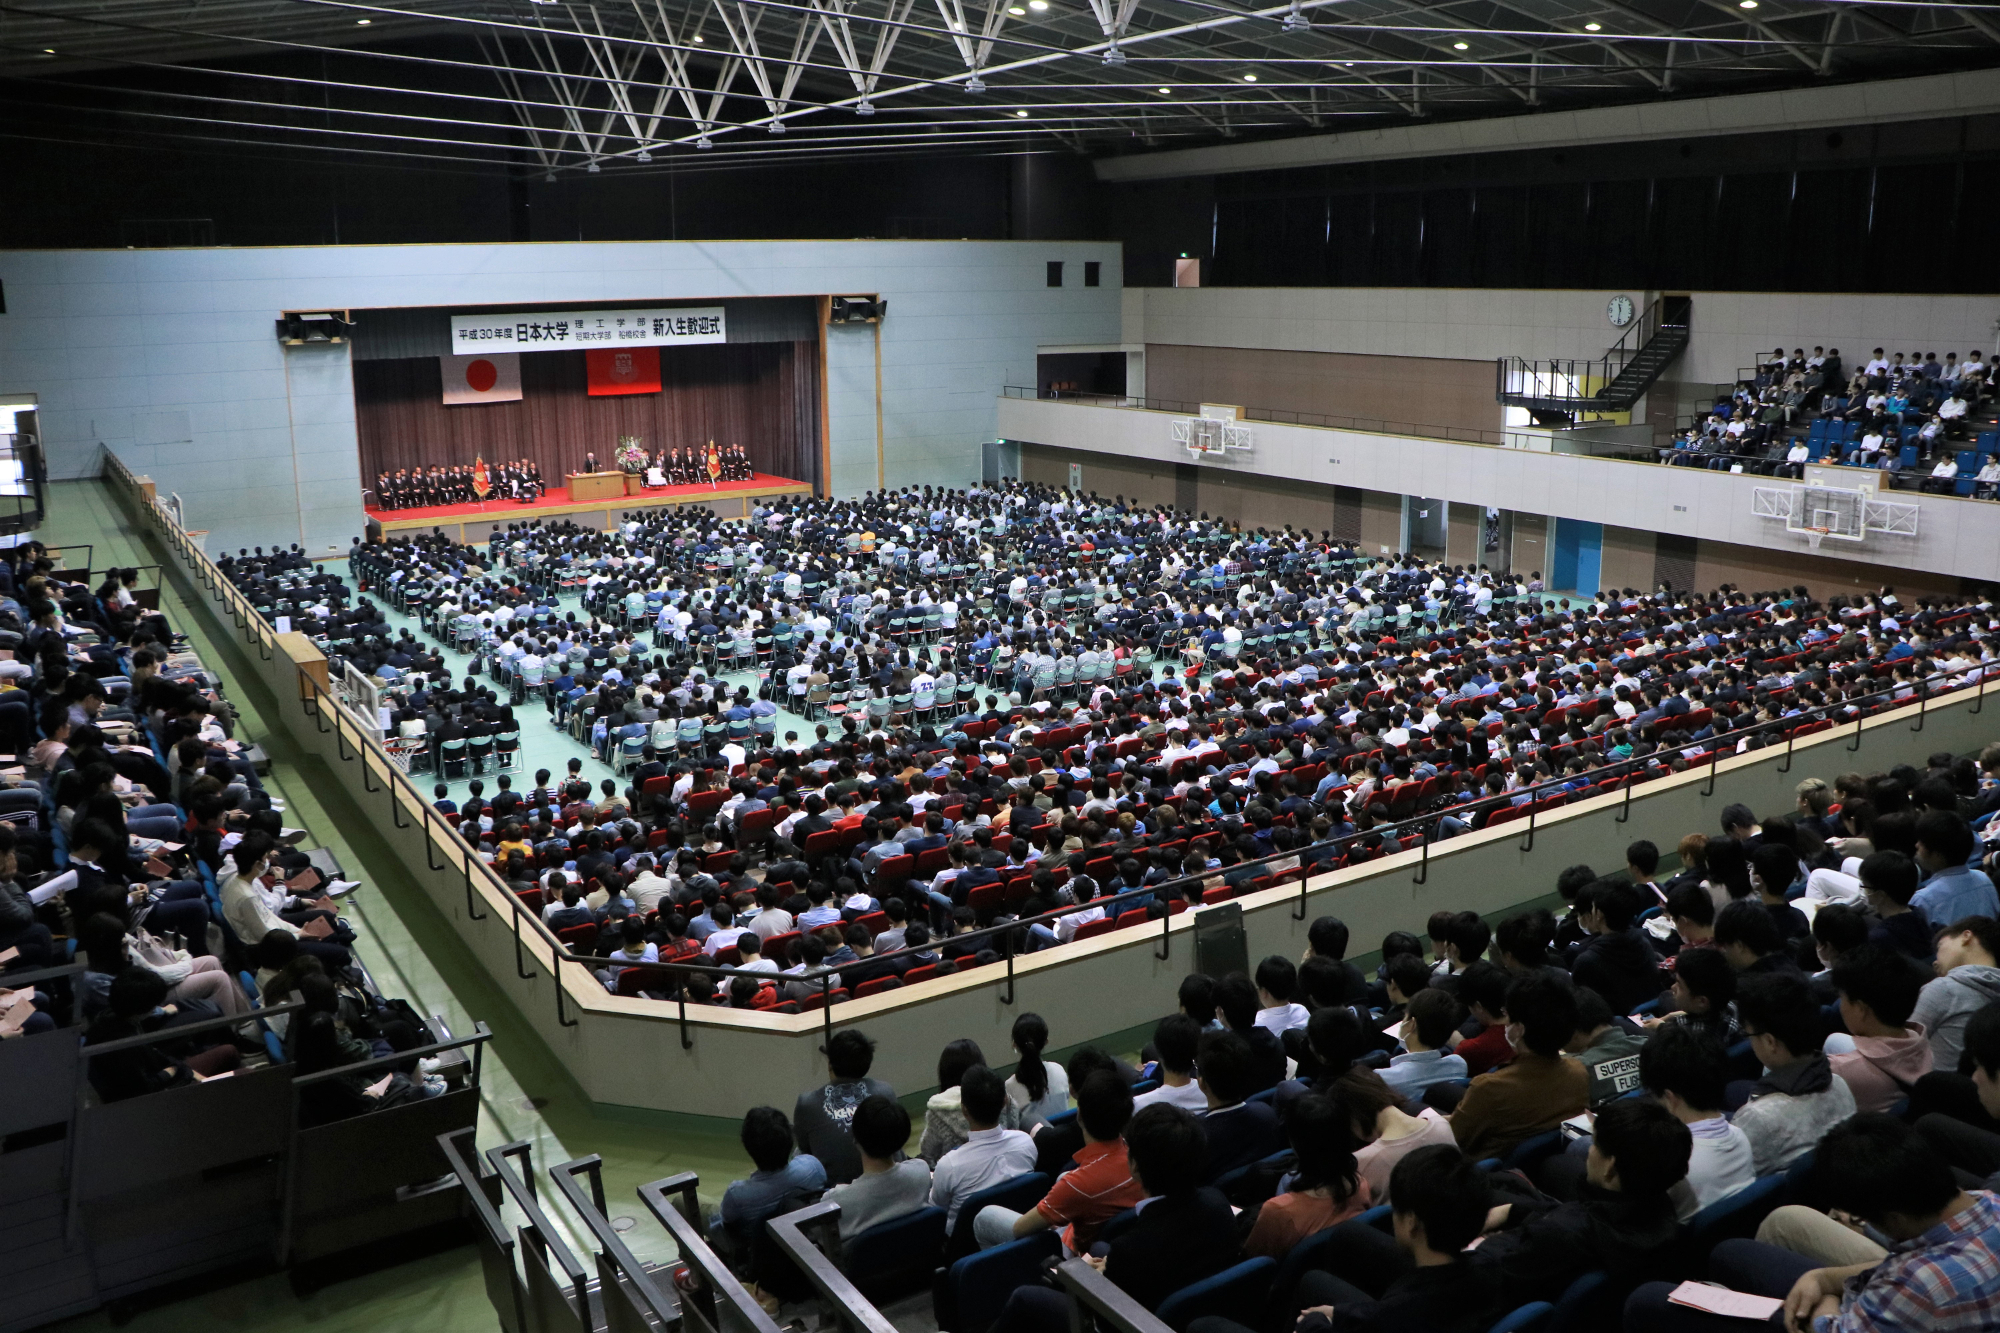 2018年4月6日に平成30年度 日本大学理工学部 短期大学部（船橋校舎） 新入生歓迎式、大学院理工学研究科新入生歓迎式が執り行われ、2,685名が新しい第一歩を踏み出しました。